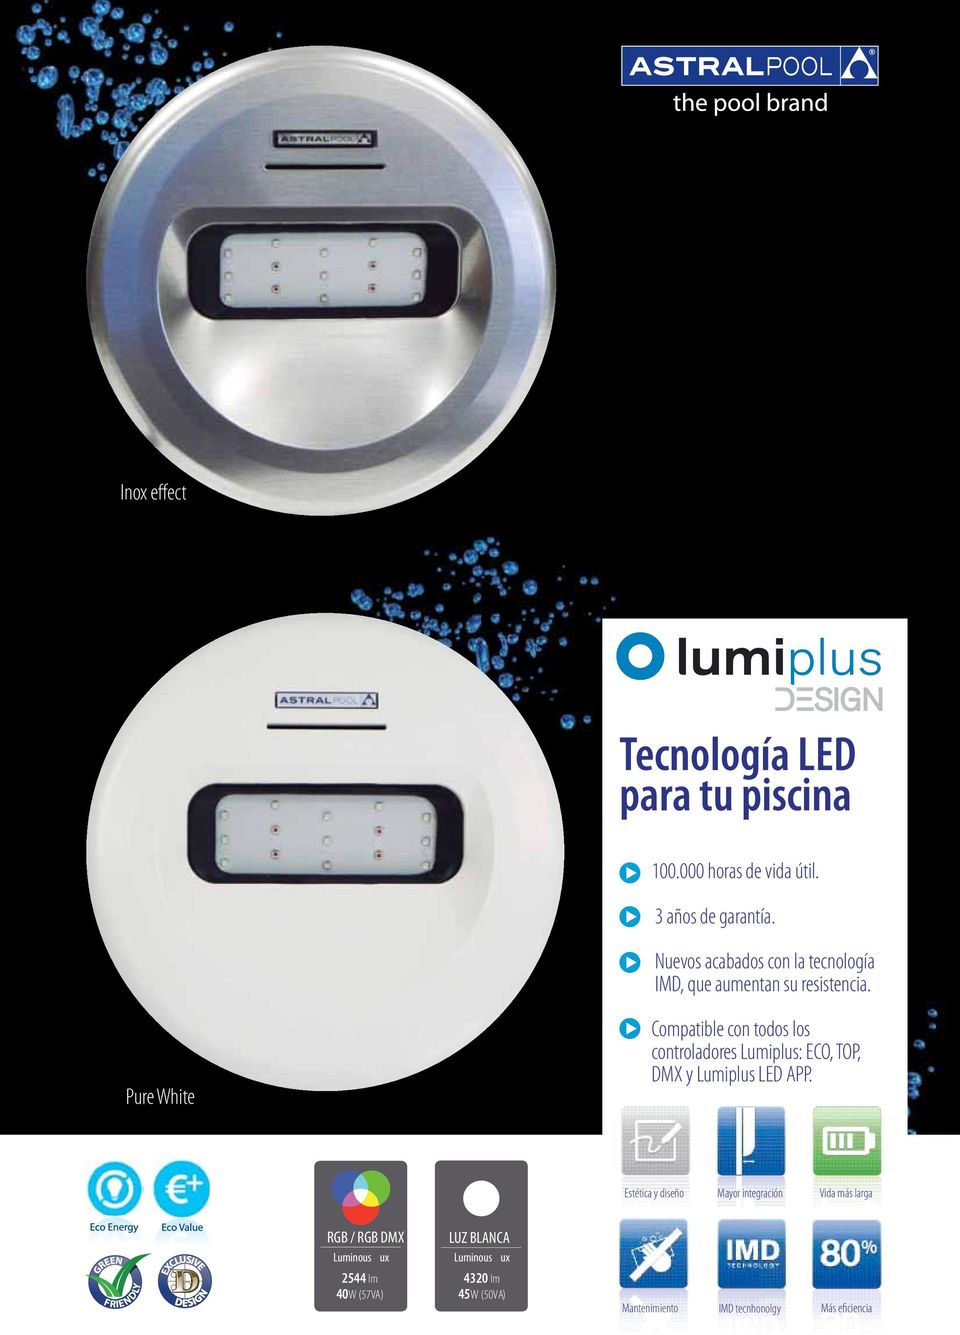 Pure White Compatible con todos los controladores Lumiplus: ECO, TOP, DMX y Lumiplus LED APP.